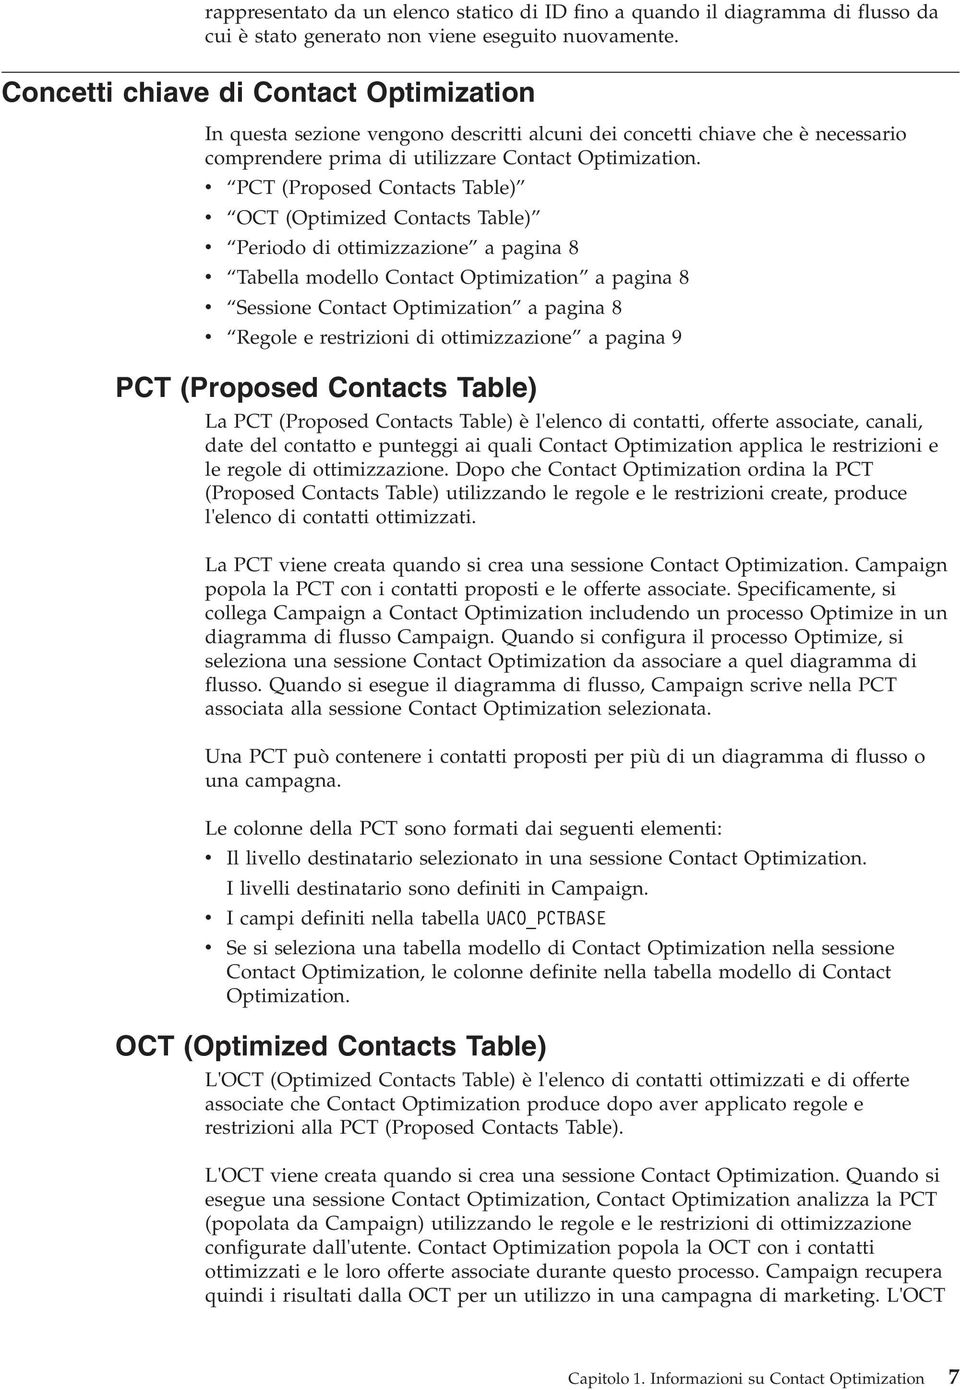 PCT (Proposed Contacts Table) OCT (Optimized Contacts Table) Periodo di ottimizzazione a pagina 8 Tabella modello Contact Optimization a pagina 8 Sessione Contact Optimization a pagina 8 Regole e